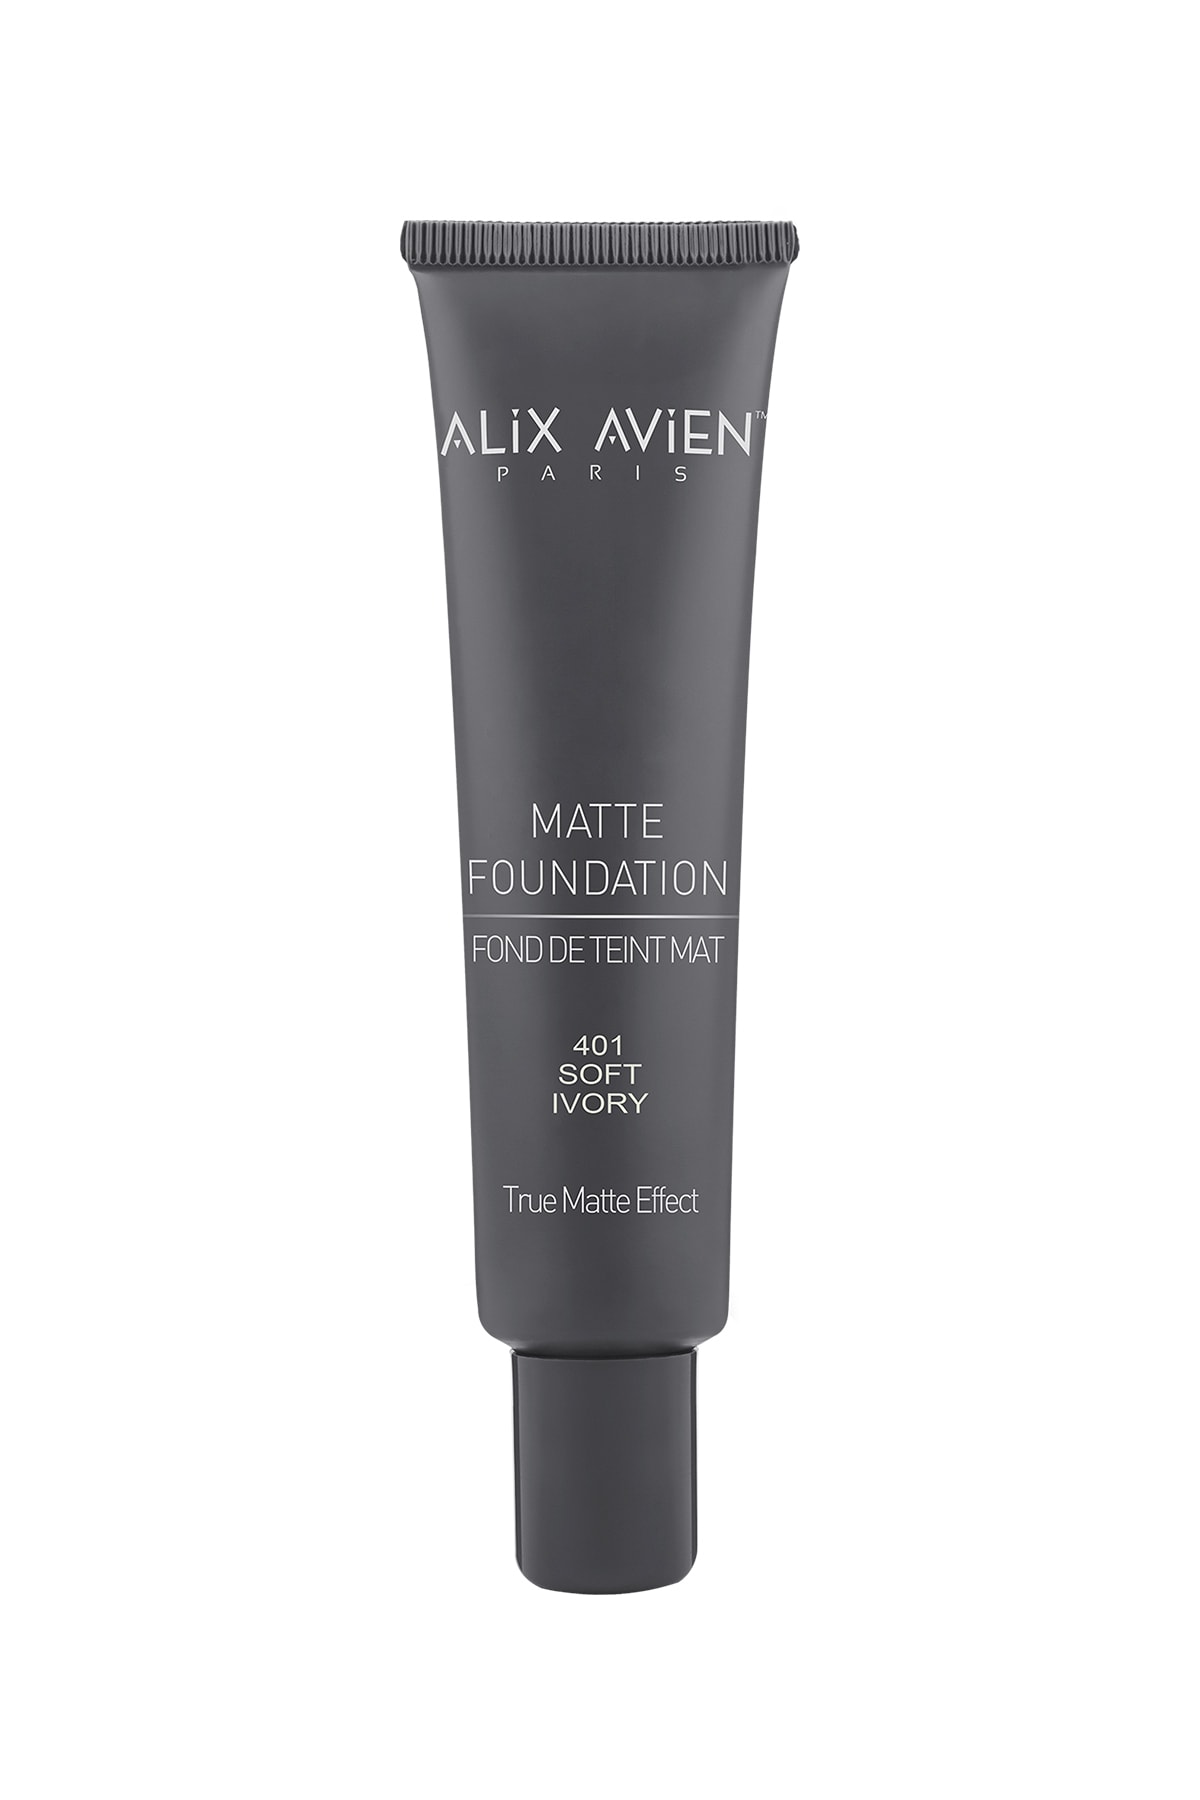 Alix Avien Matte Foundation - Mat Fondöten 401 Soft Ivory Yüksek Kapatıcı Uzun Süre Kalıcı Etki - 40 ml